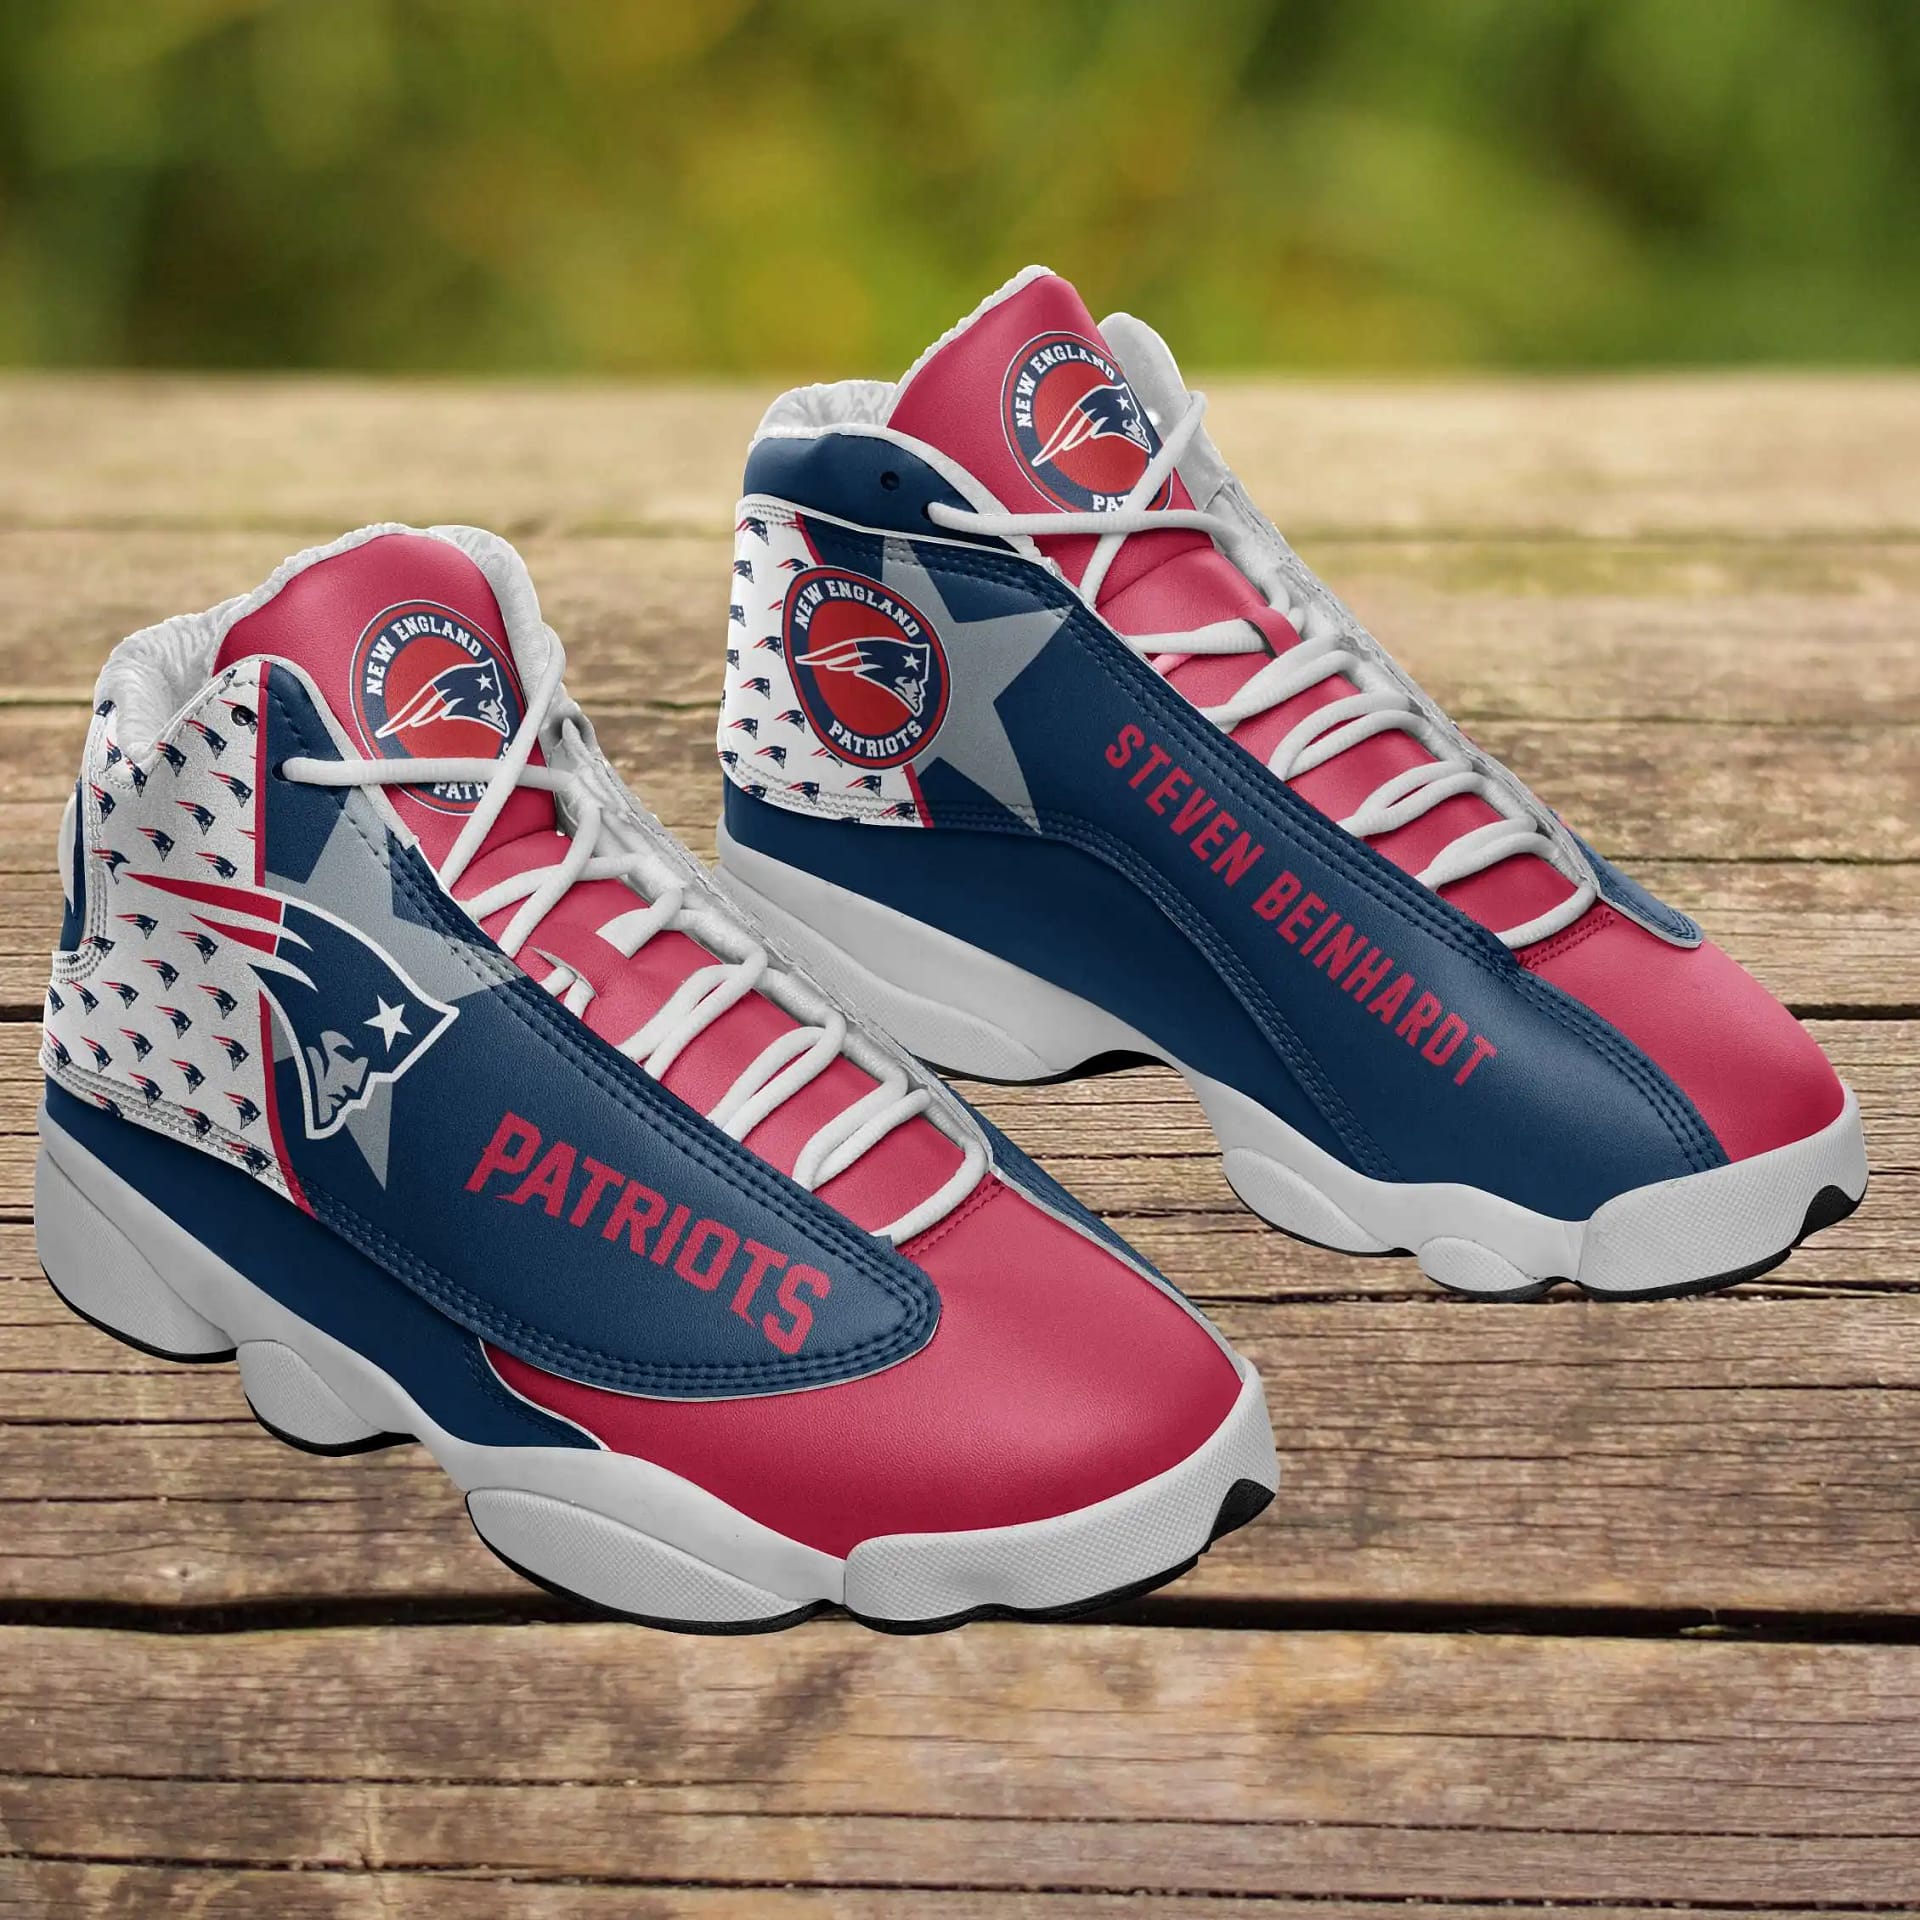 New England Patriots Air Jordan Shoes